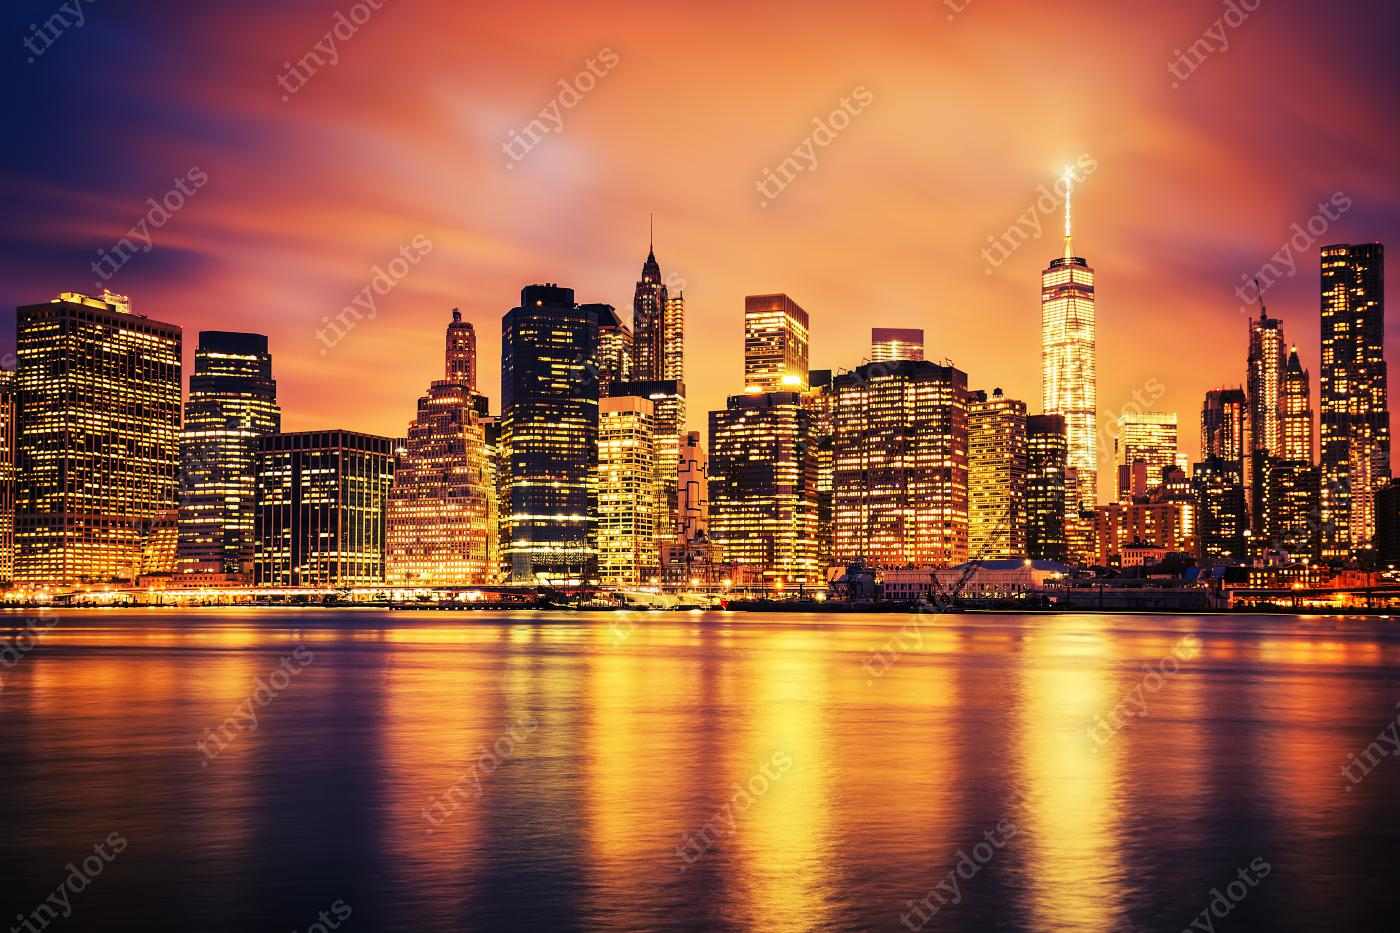 Afbeelding op acrylglas New York City Manhattan midtown bij zonsondergang